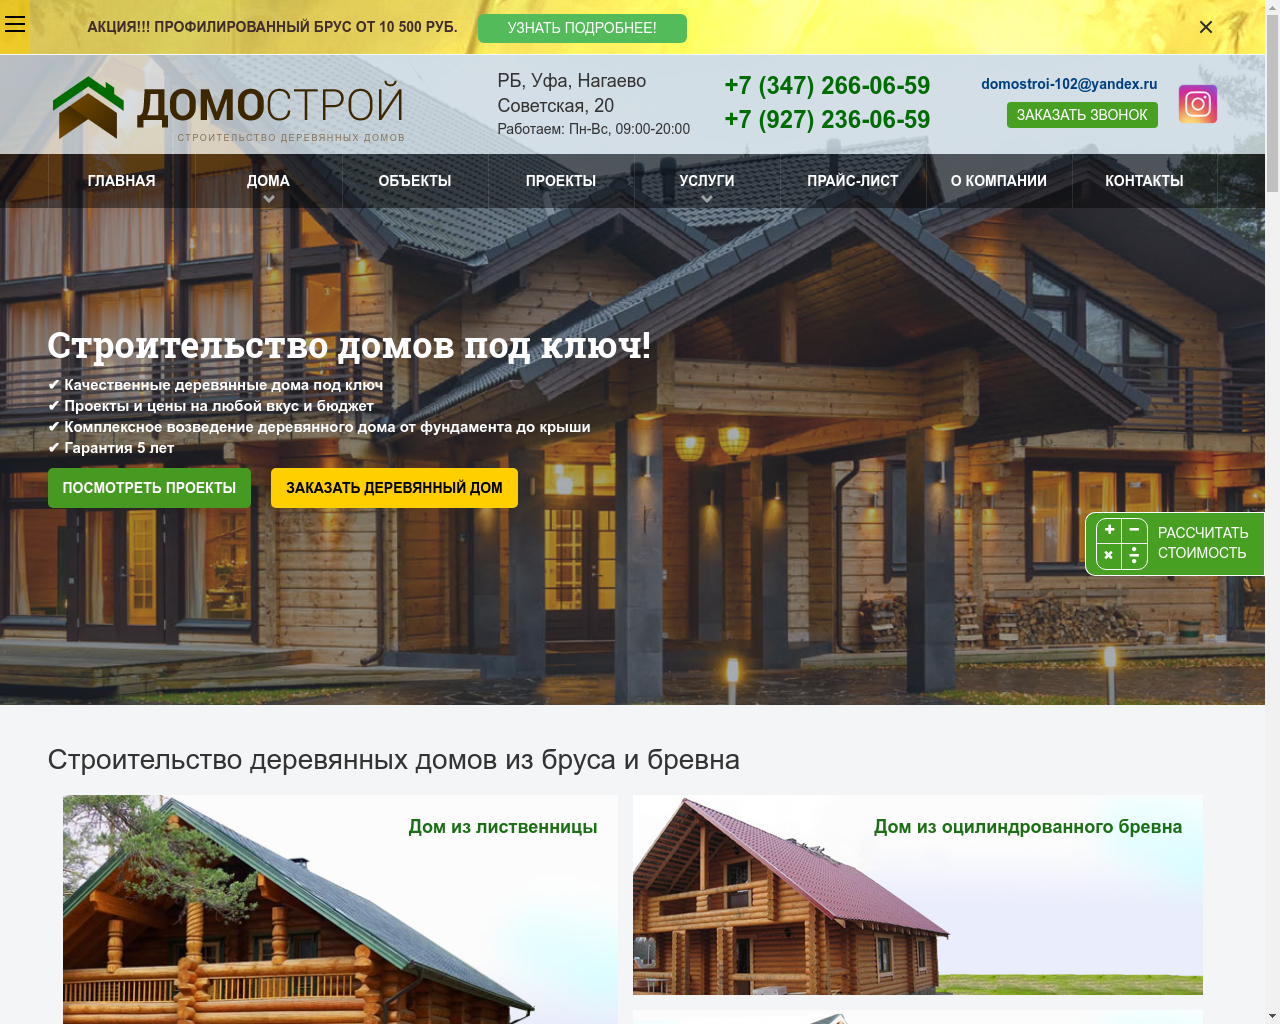 Изображение сайта domostroy102.ru в разрешении 1280x1024